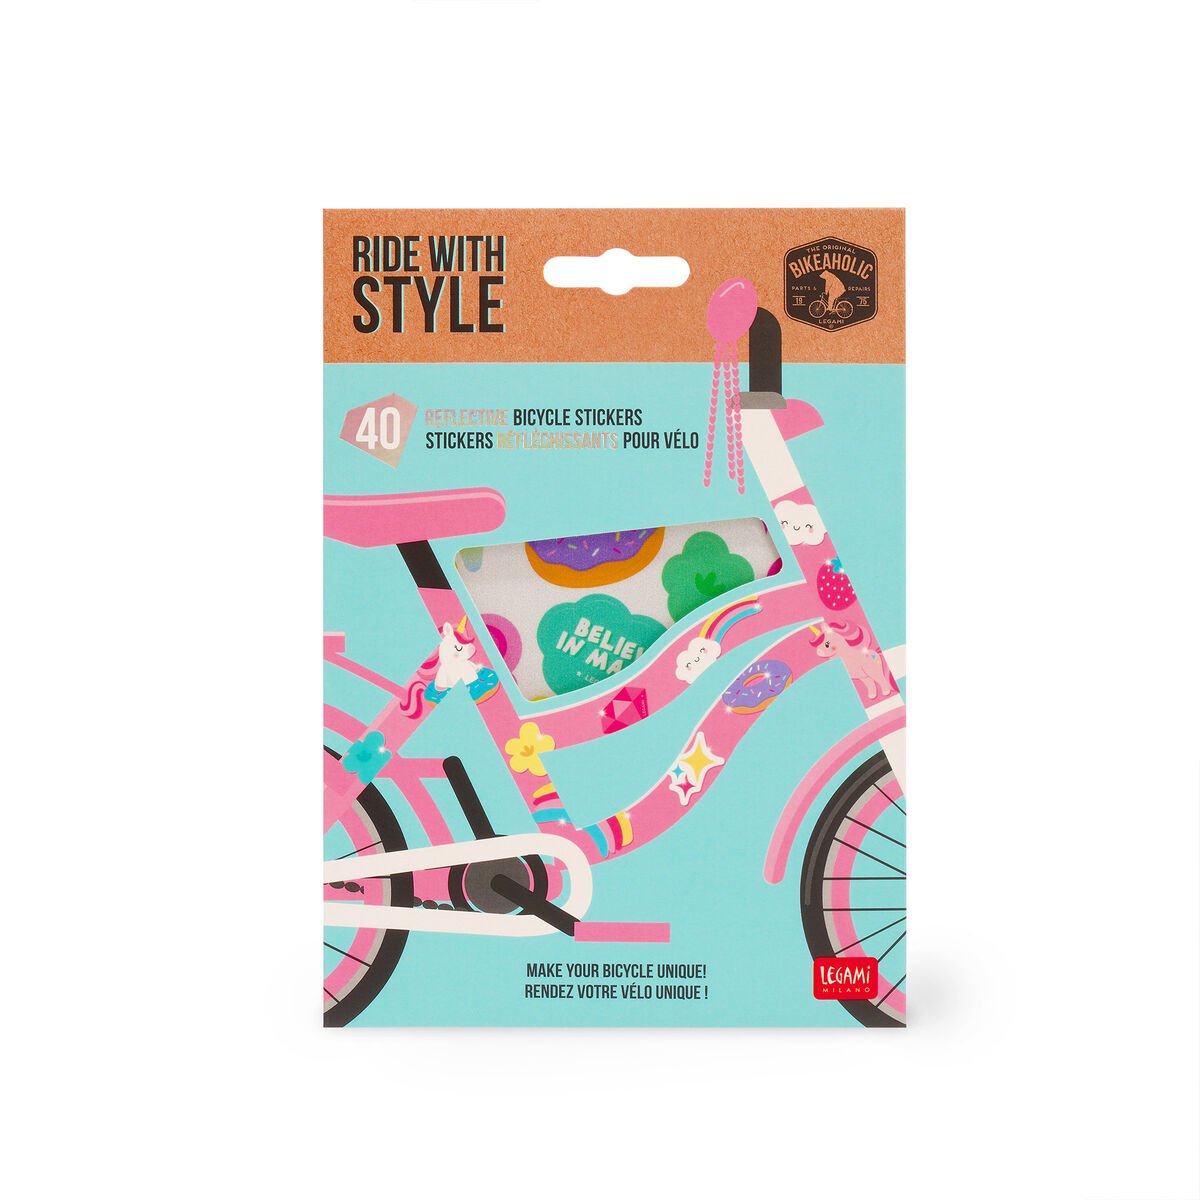 Stickers Riflettenti Per Bicicletta - Ride With Style, , zoo